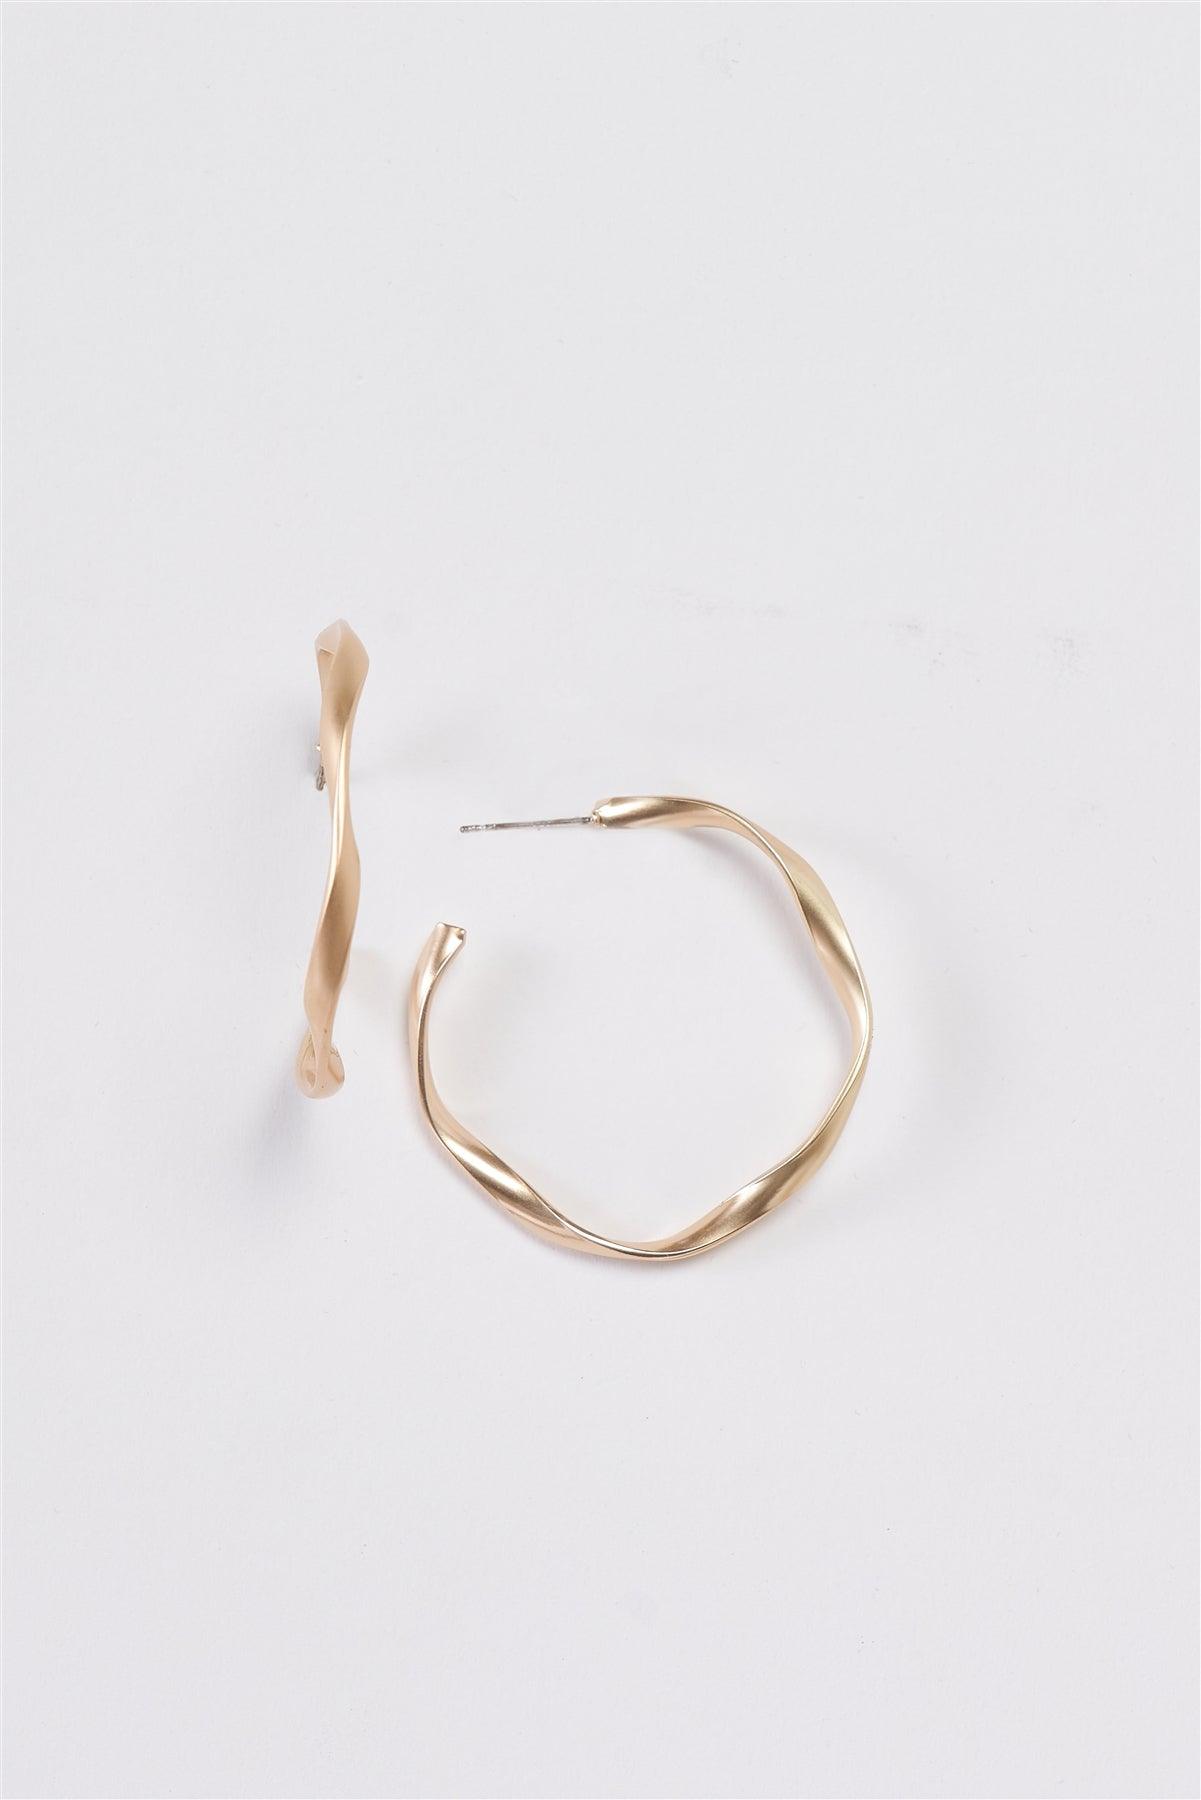 Matte Gold Interweave Twisted Hoop Earrings /3 Pairs